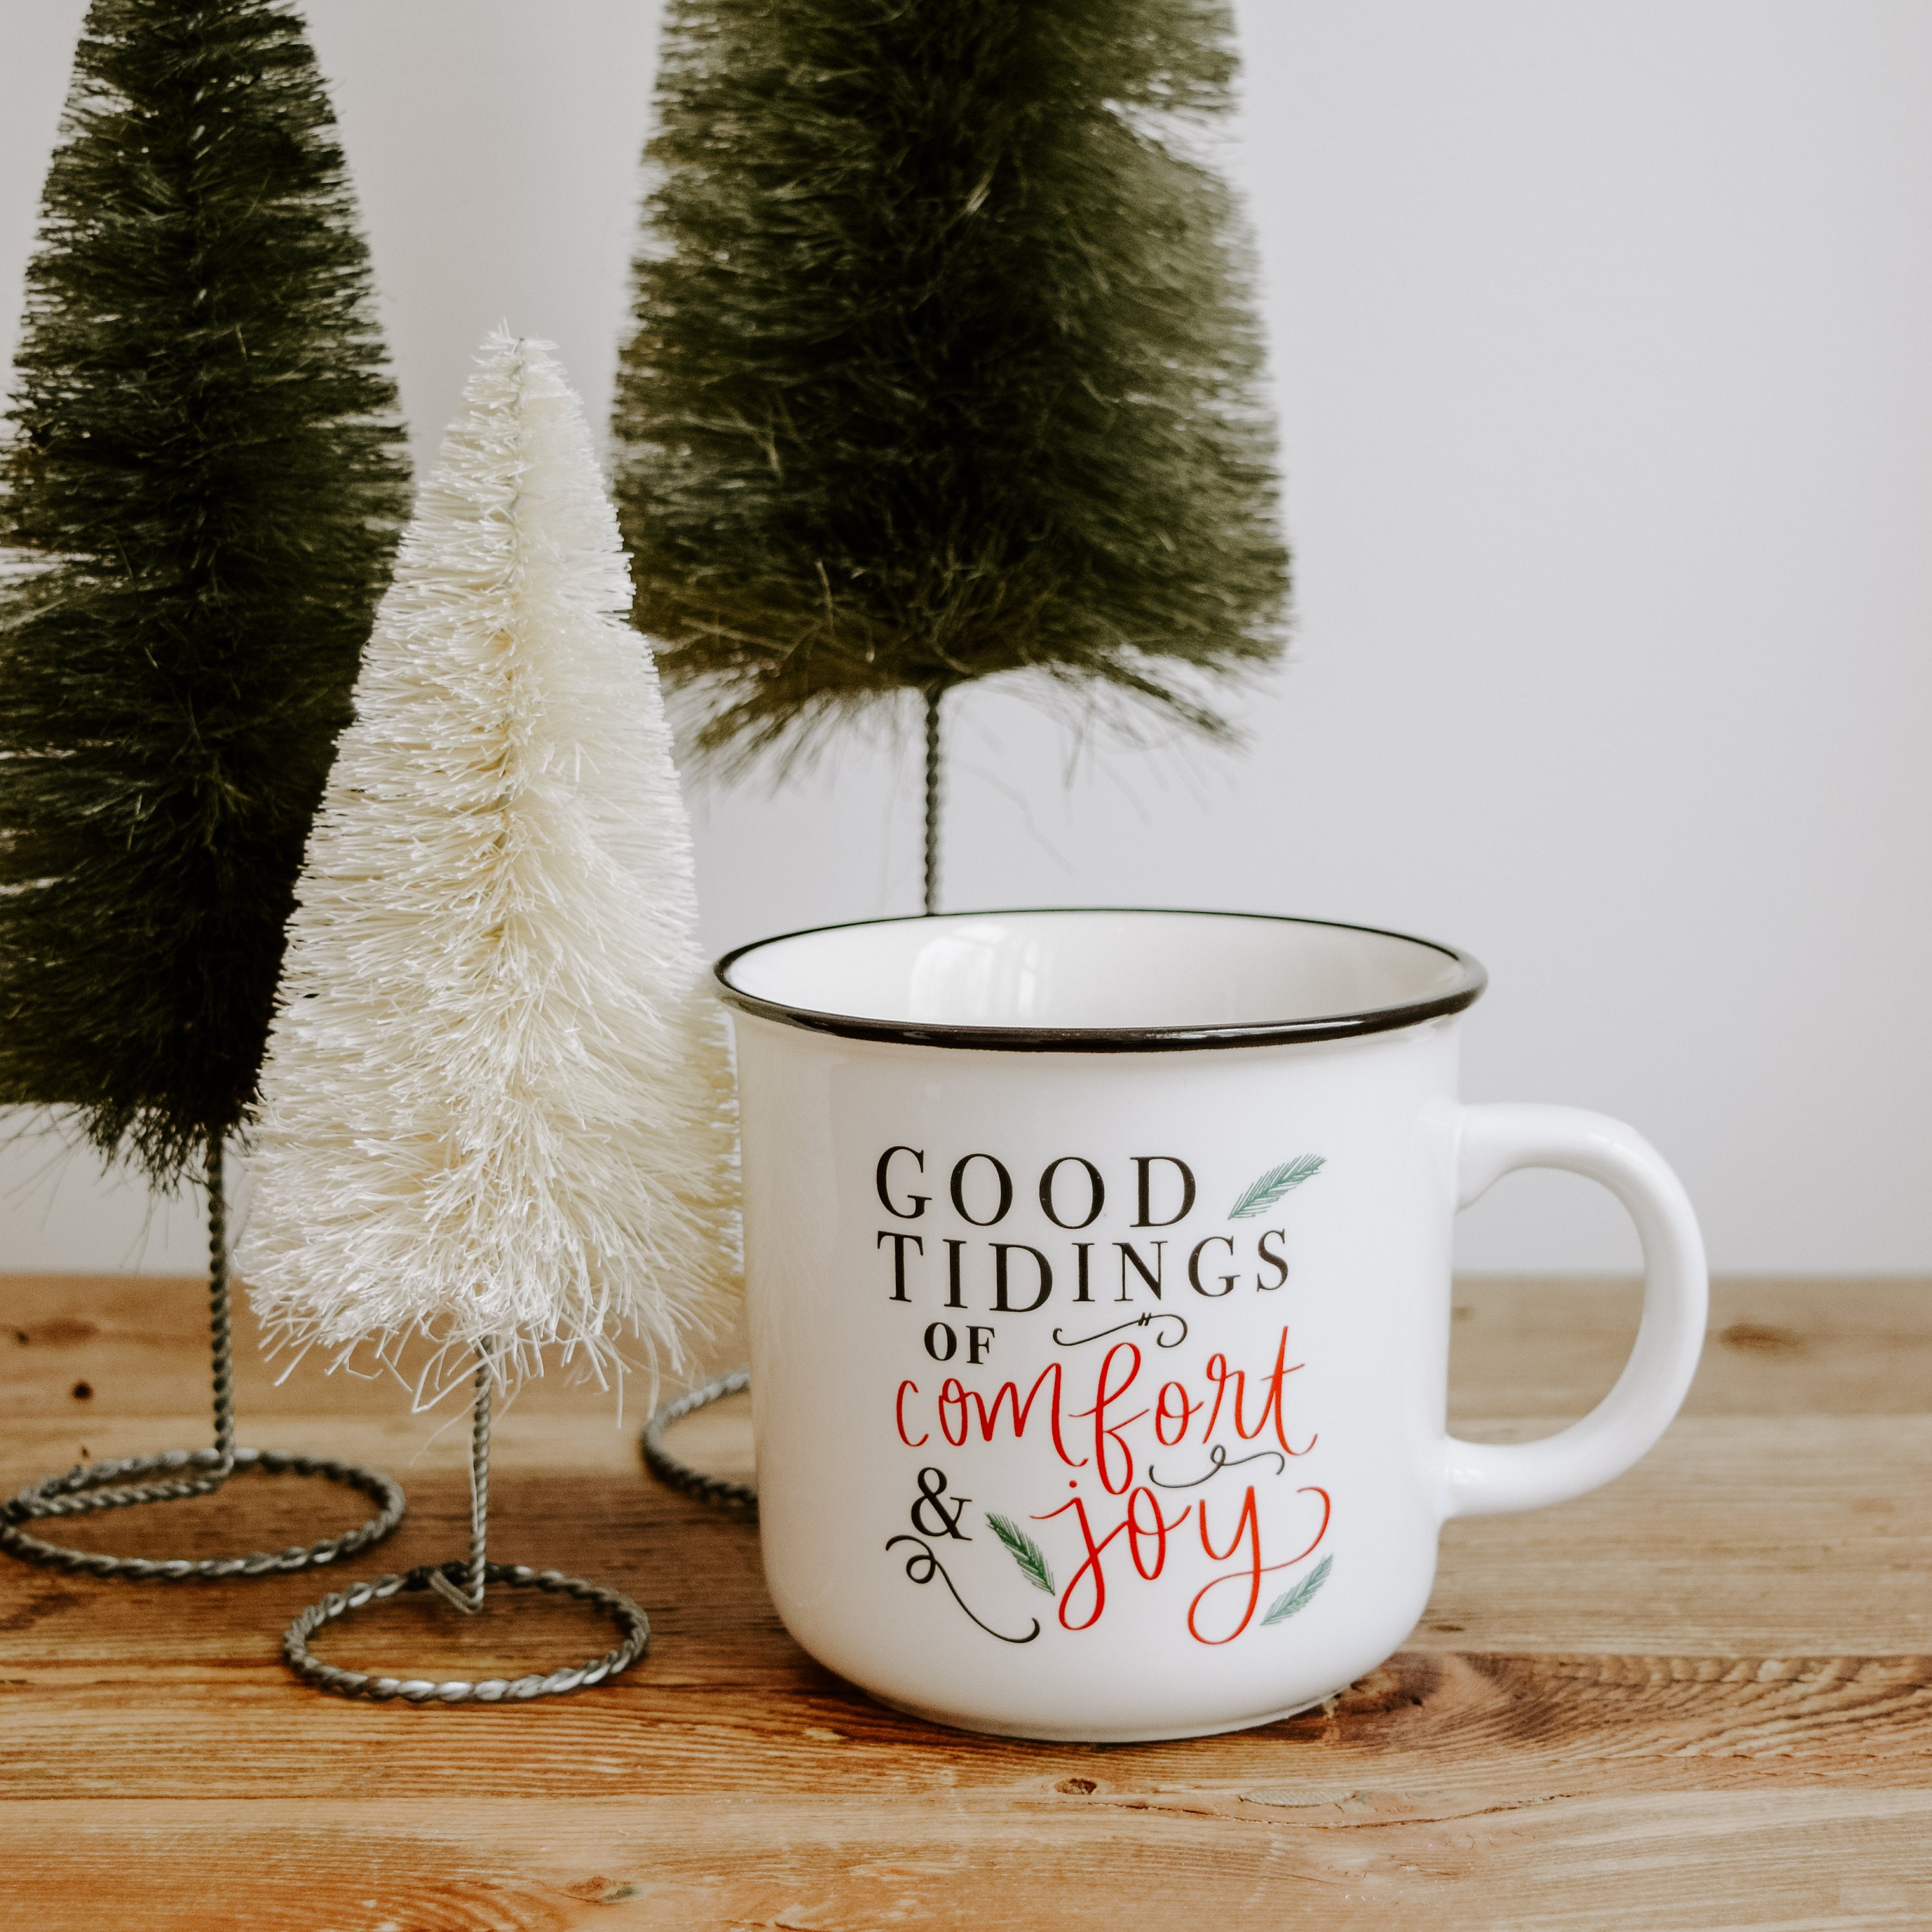 Comfort & Joy – Red Christmas Mug - 139Made, LLC